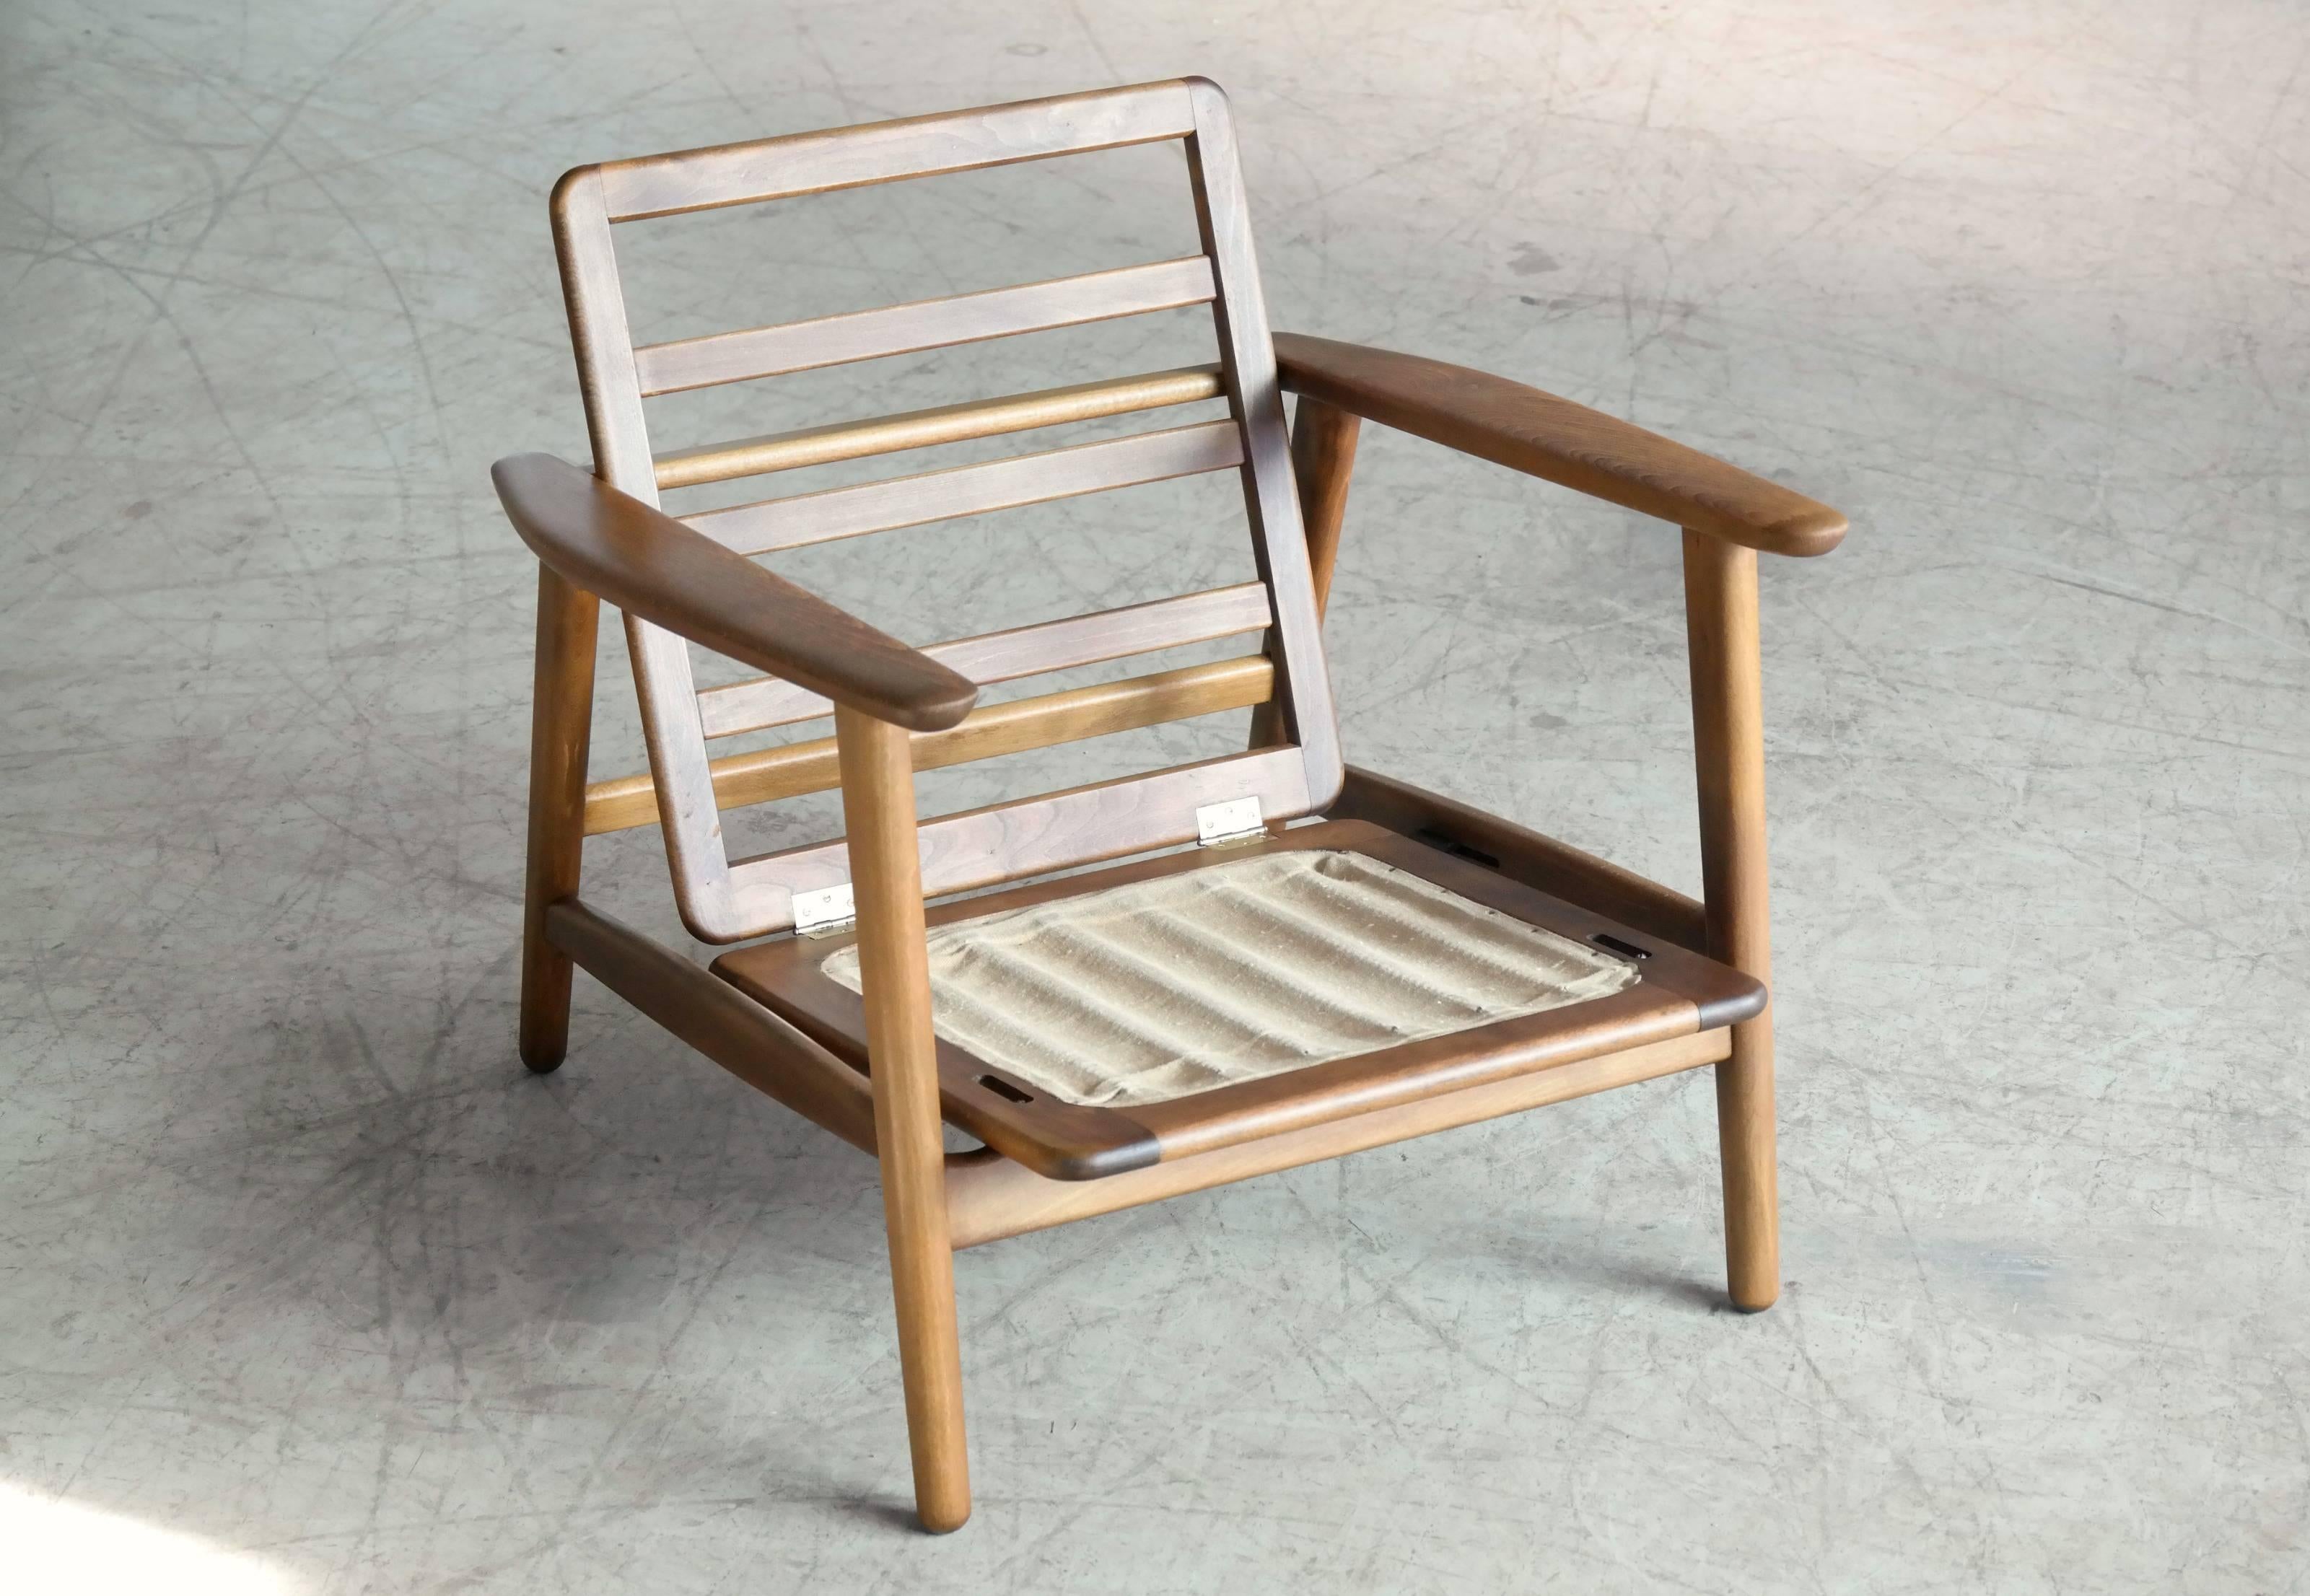 Mid-20th Century Hans Wegner Easy Chair Model GE-233 for GETAMA, Denmark Midcentury